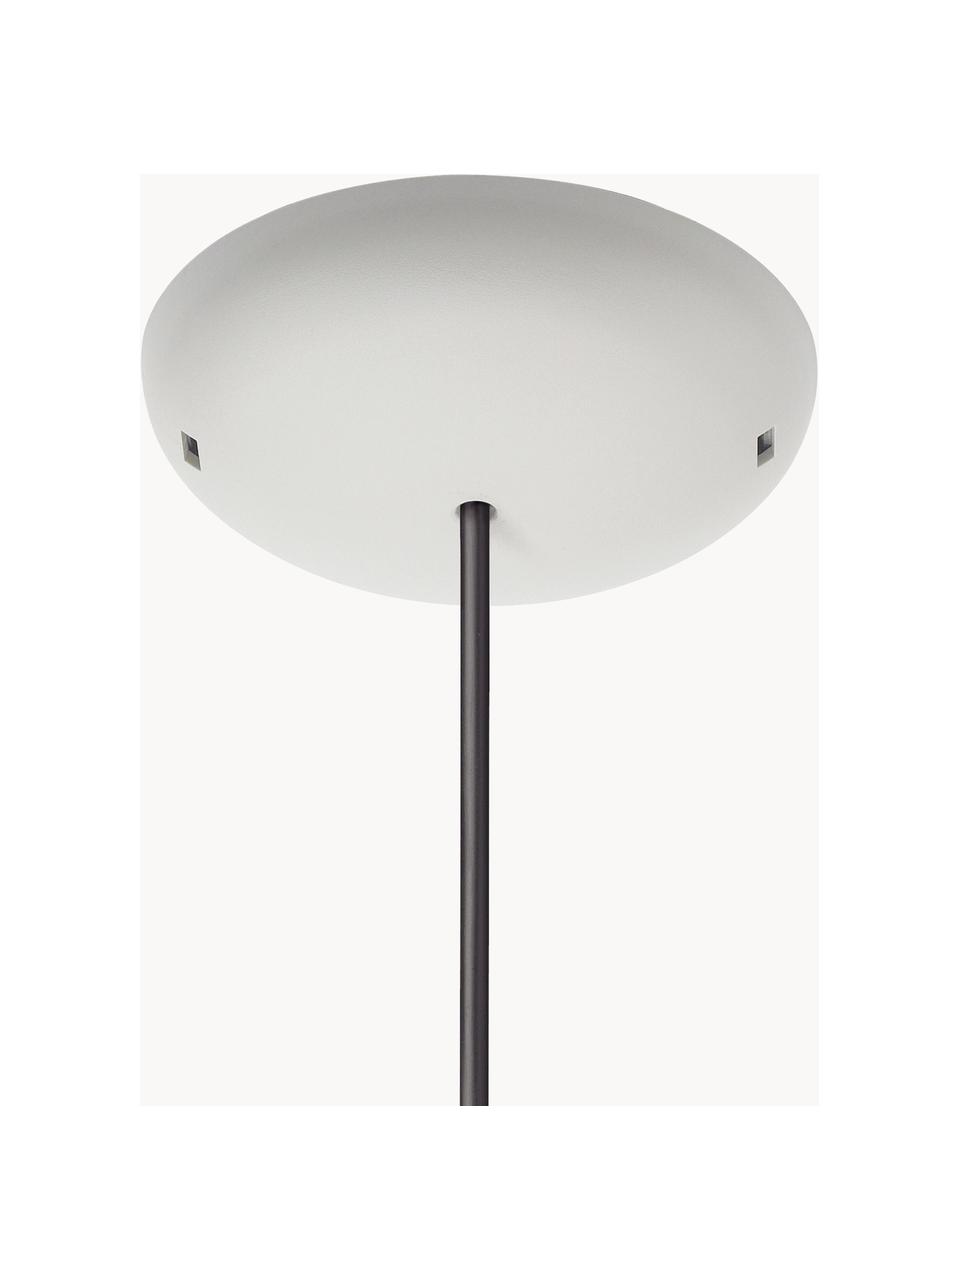 Dimbare hanglamp Frisbi, Wit, zilverkleurig, Ø 60 x H 73 cm